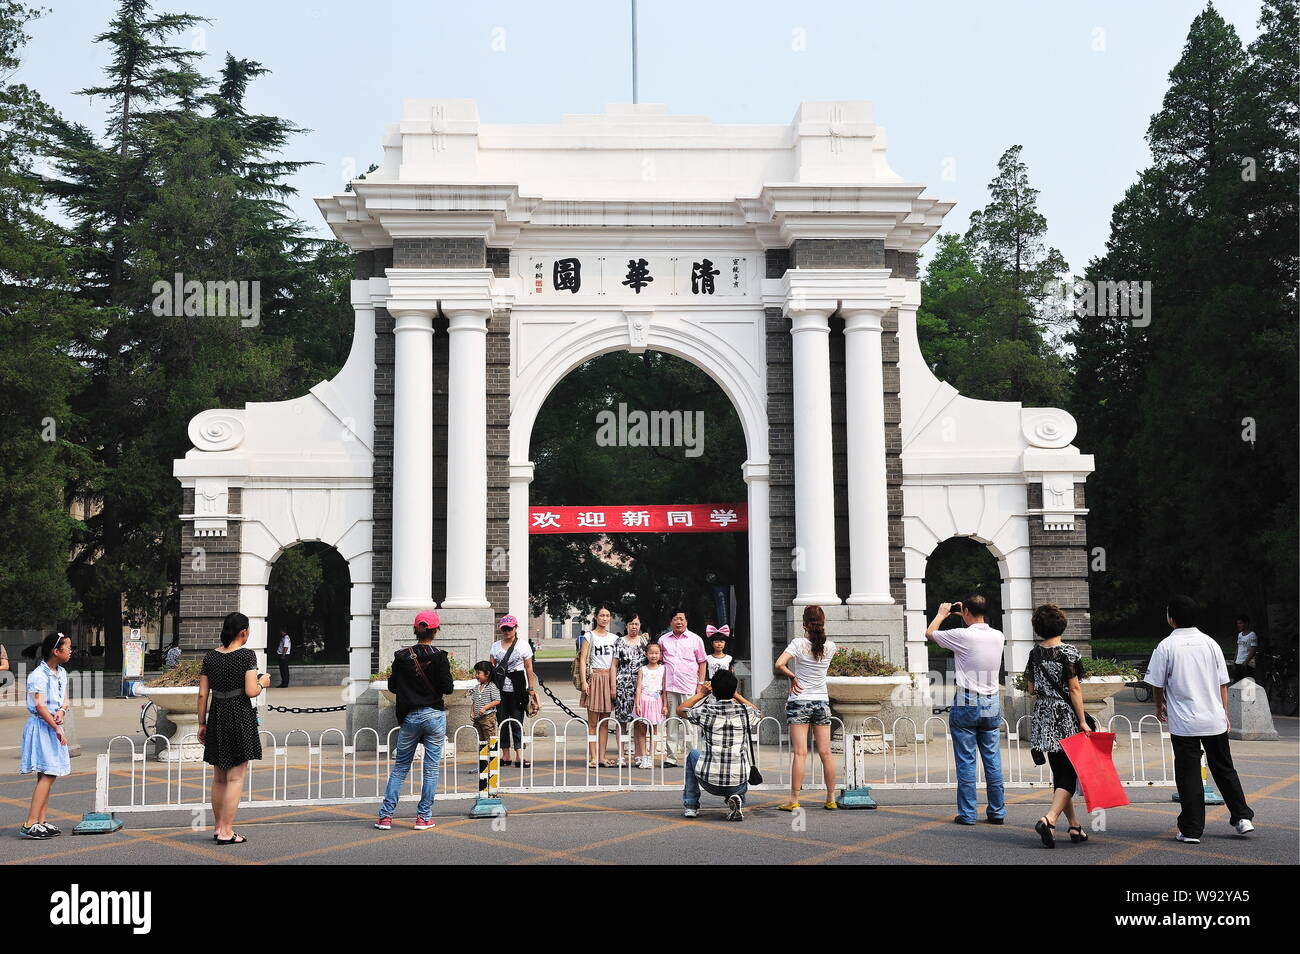 ---- Leute nehmen Fotos auf der symbolischen Zweite Tor von der Tsinghua Universität in Peking, China, 23. August 2011. China Tsinghua Universität, reveale Stockfoto